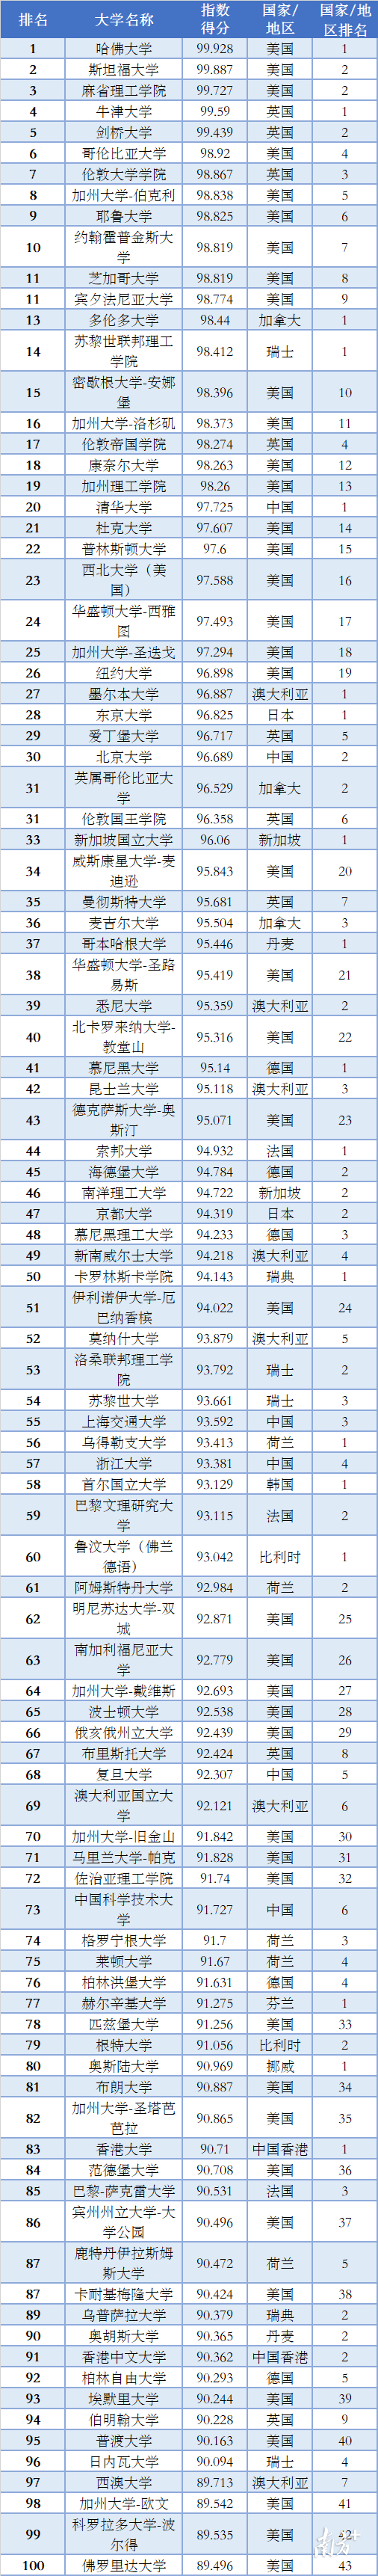 全球学校排行榜_中国研究生院最新排名,双非竟然排第一!(2)